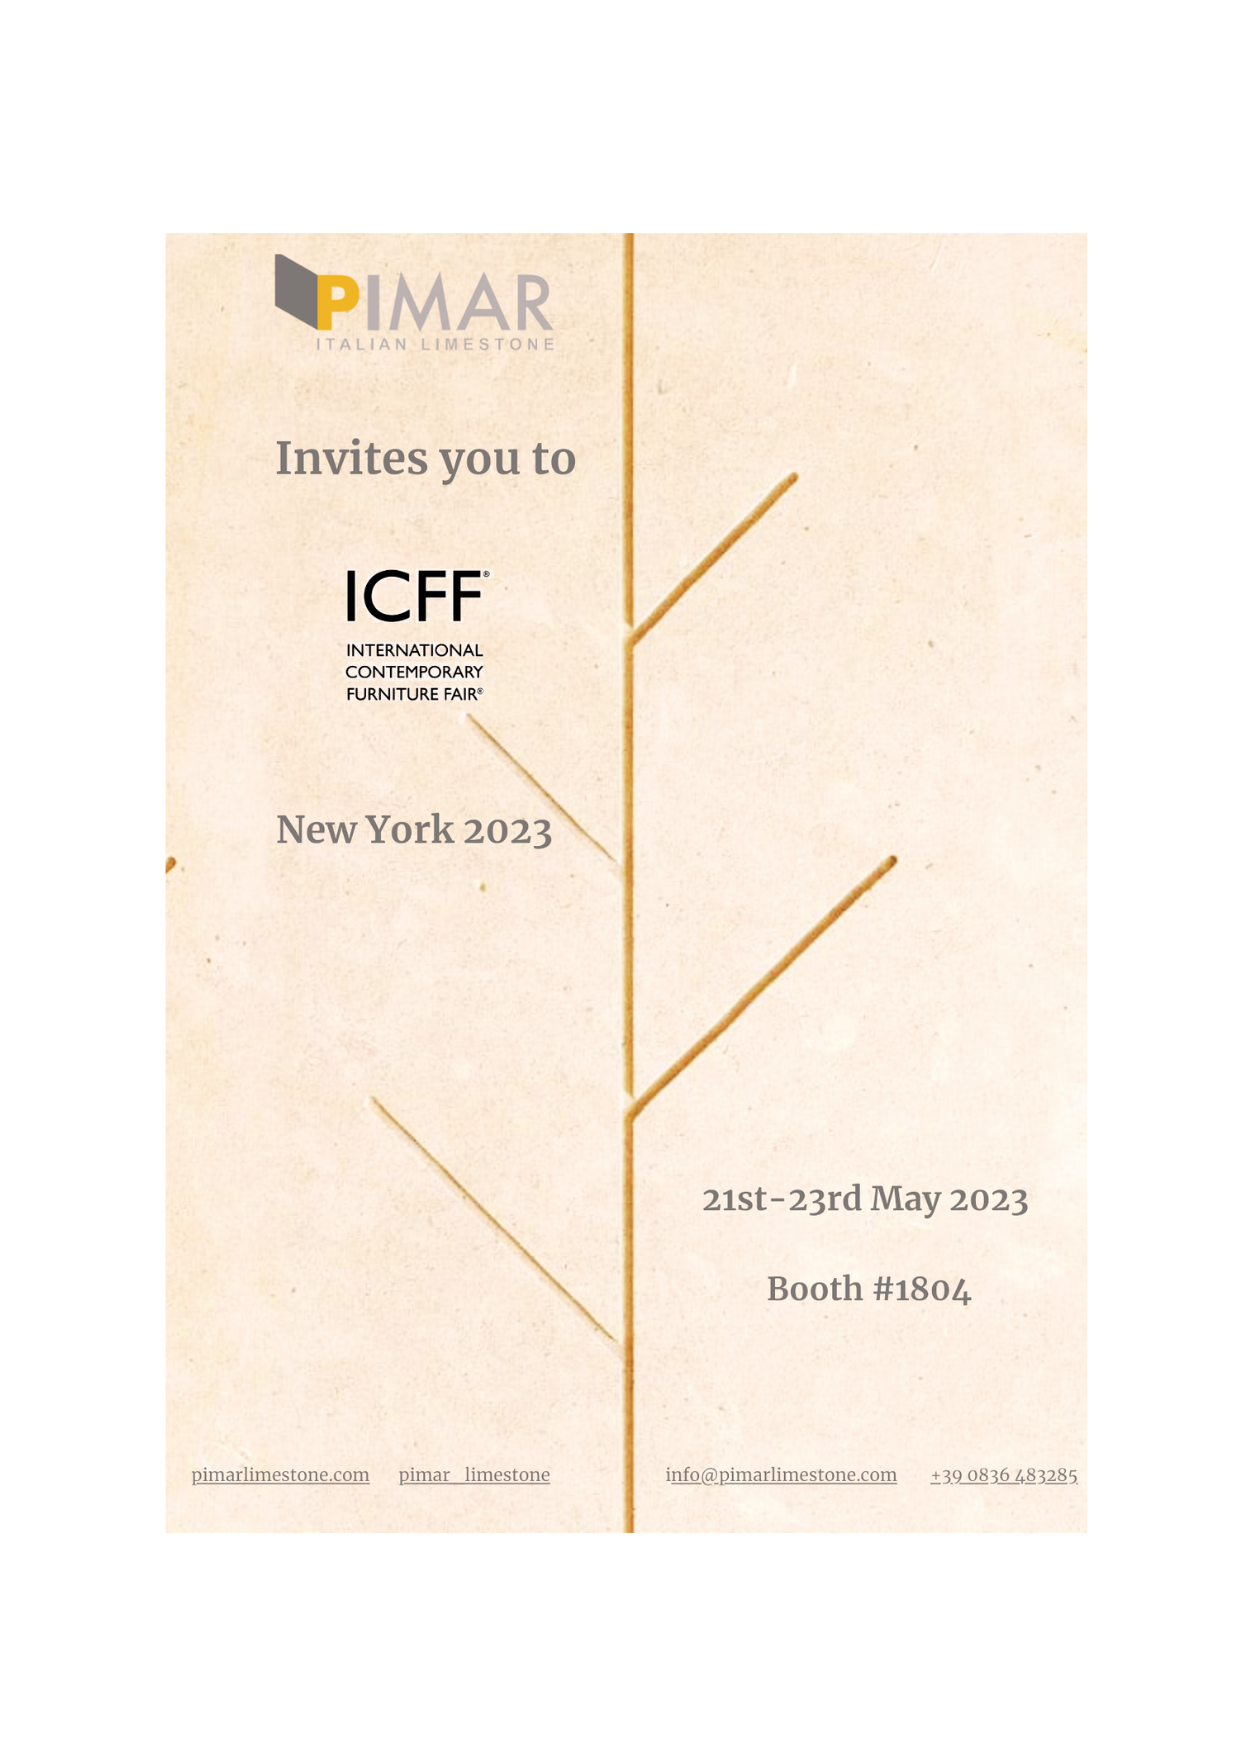 PIMAR partecipates at ICFF 2023